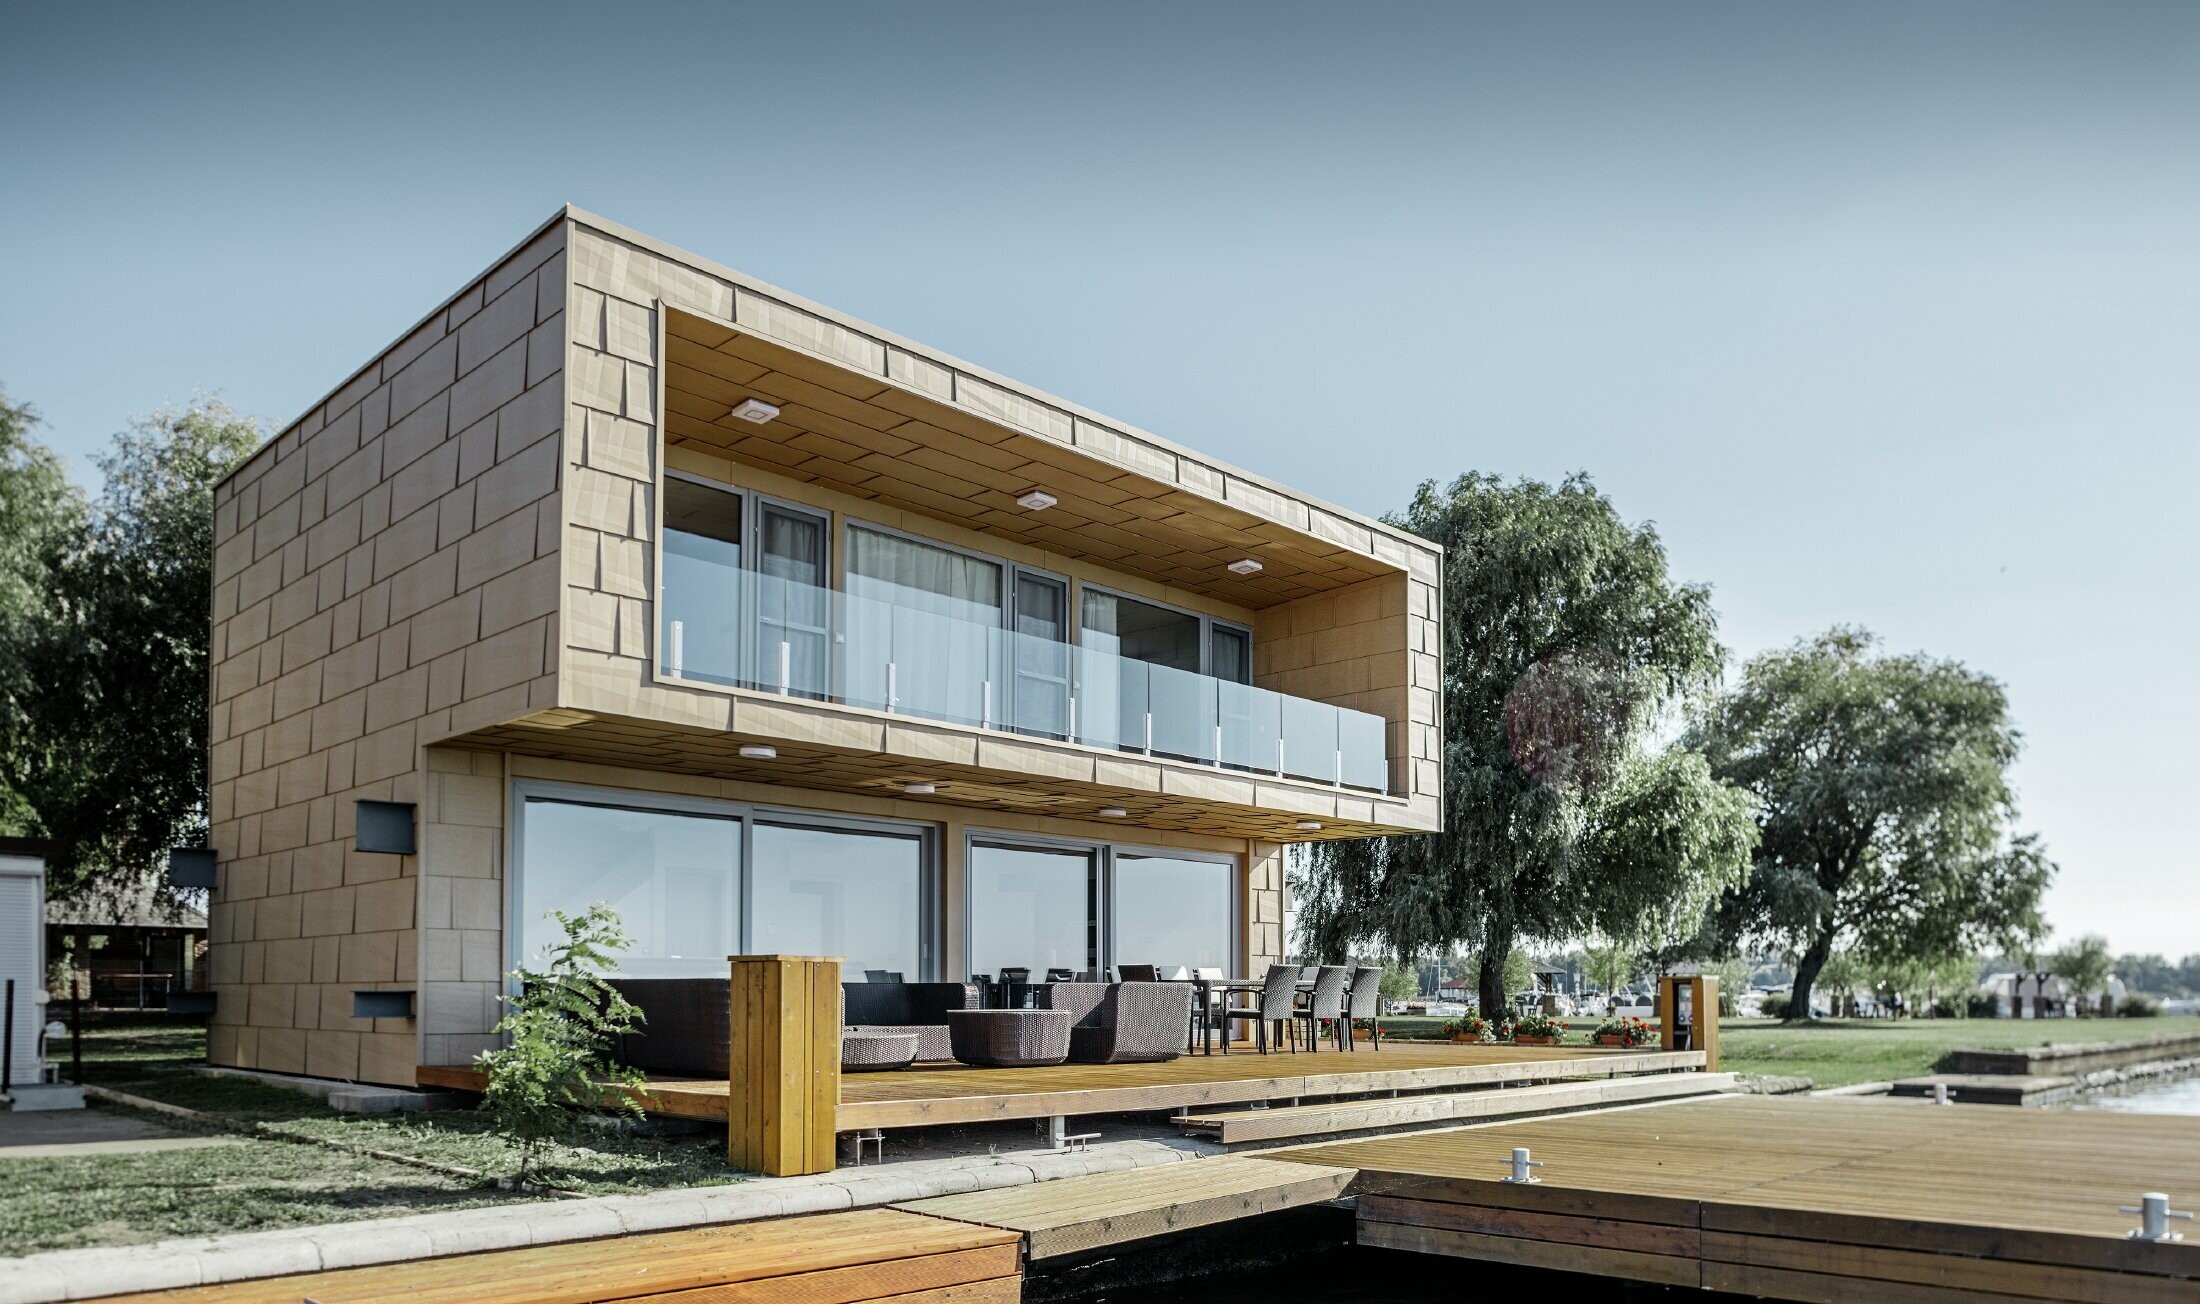 Maison secondaire moderne au toit plat et aux grandes baies vitrées donnant sur le lac — Façades en aluminium PREFA de couleur brun sable aux arêtes prononcées